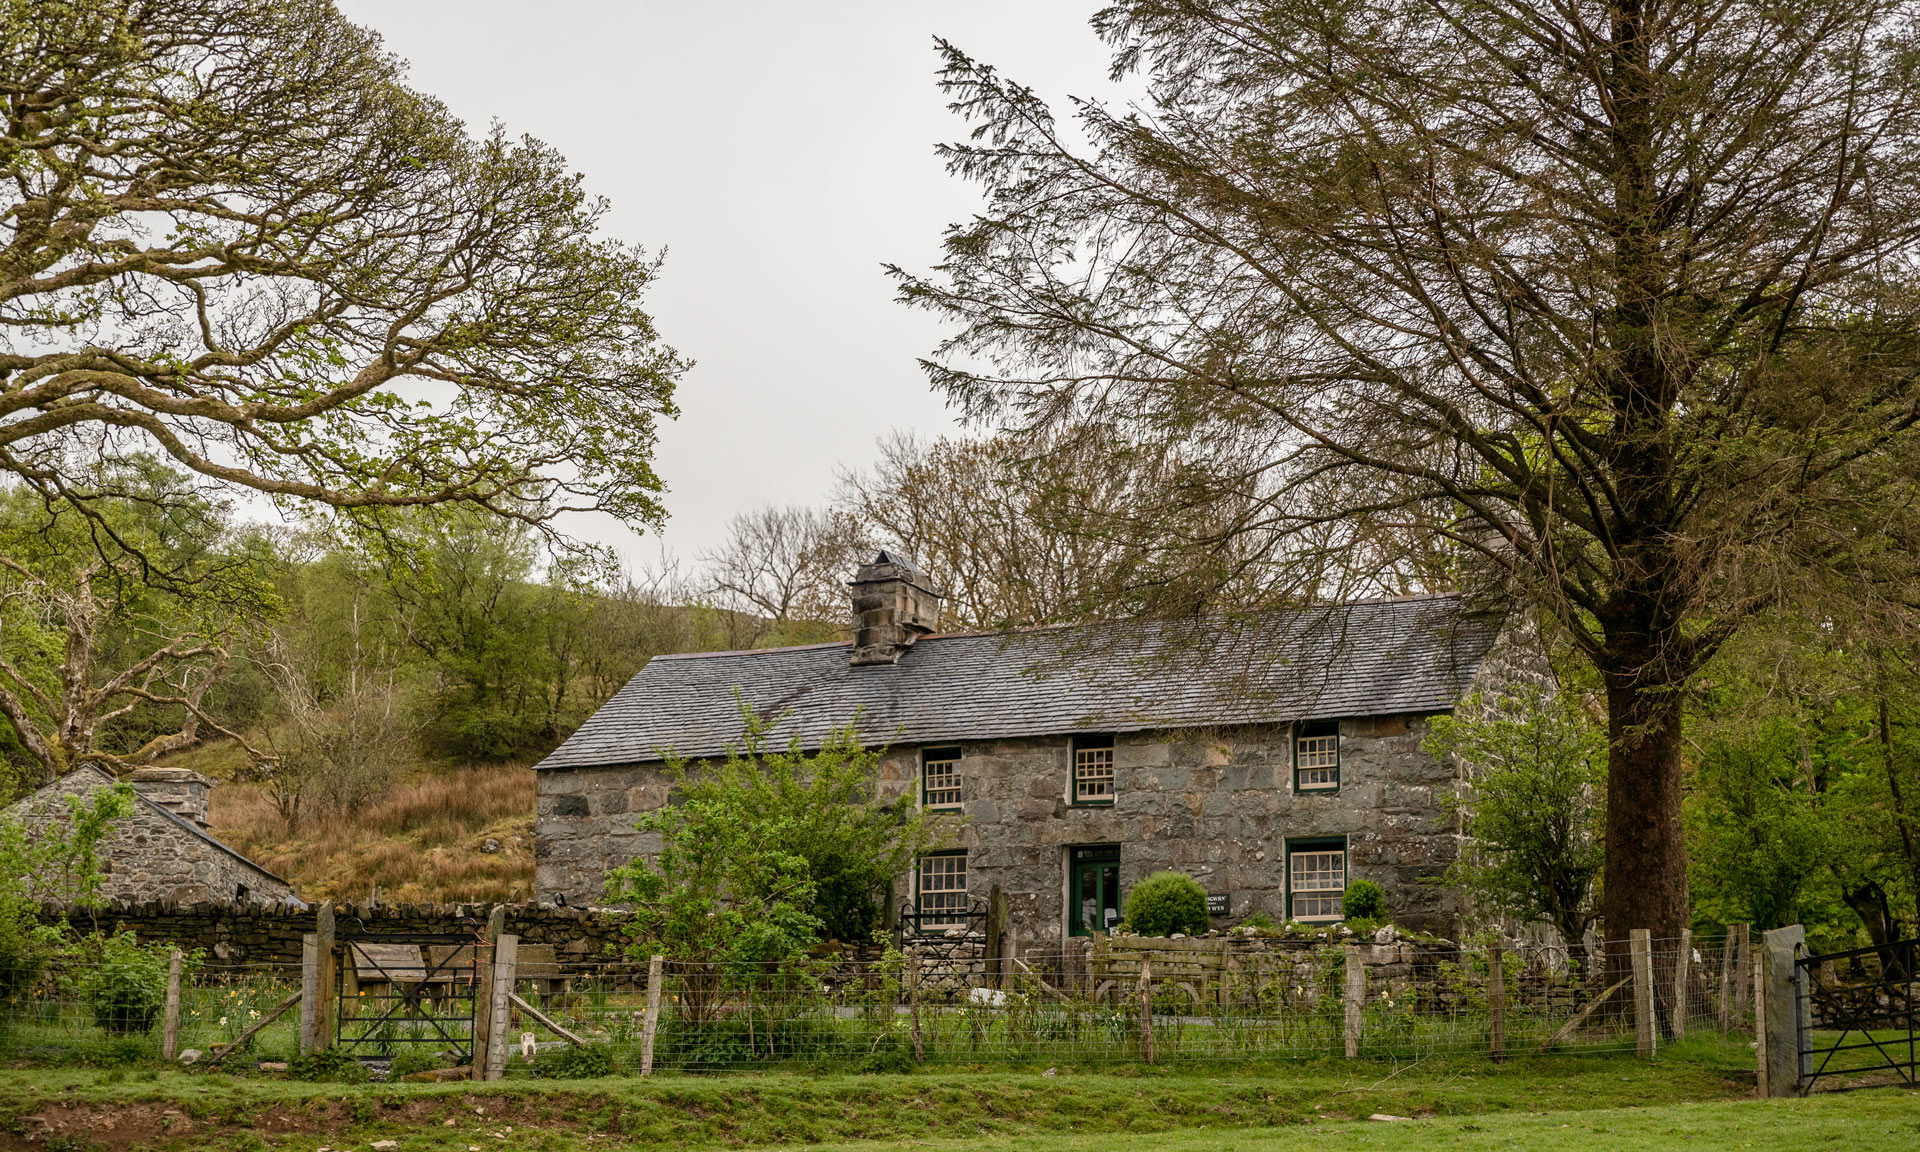 Yr Ysgwrn farmhouse from afar